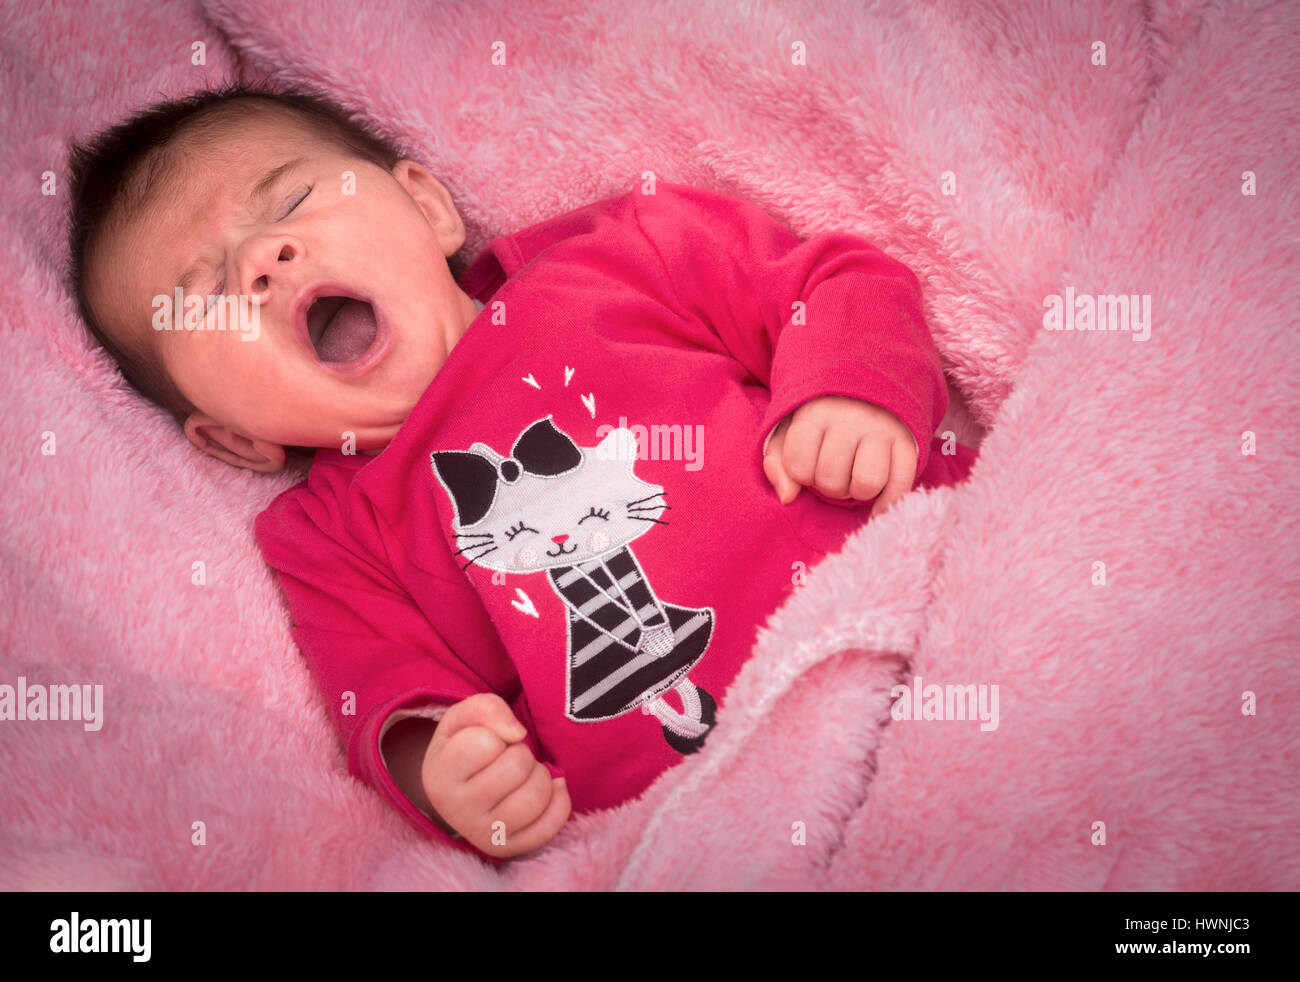 Ein neugeborenes Mädchen Gähnen auf einer rosa Decke sah sicherlich liebevoll von ihren Eltern, die die geringste ihre komische Ausdrücke nutzen. Stockfoto